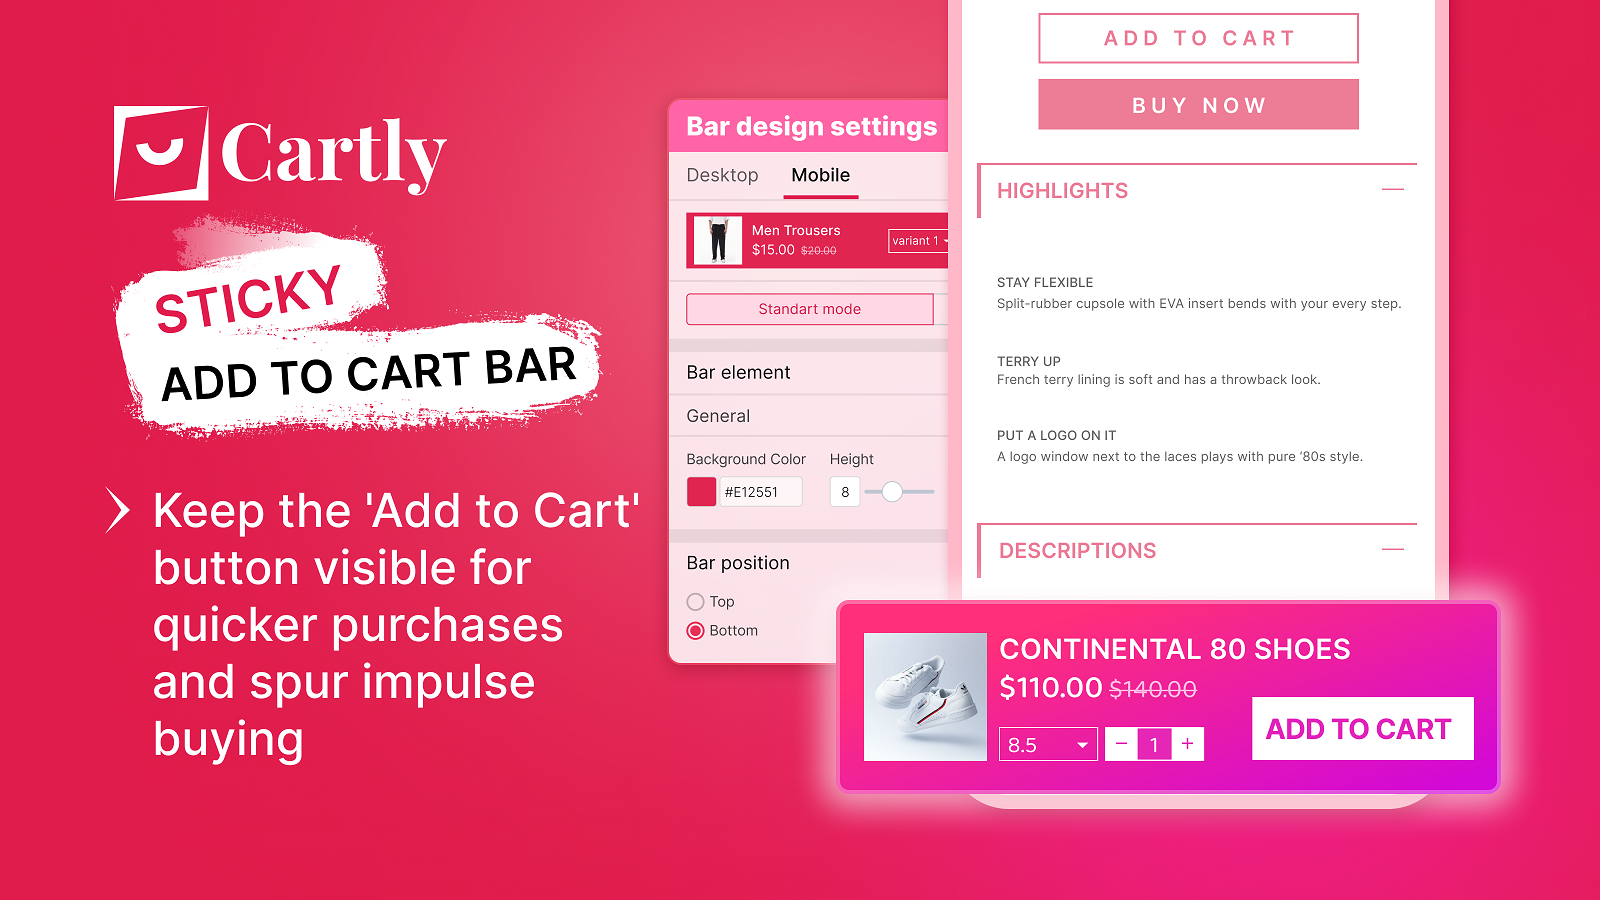 Sticky Add to Cart Button Bar für schnellere Impulskäufe